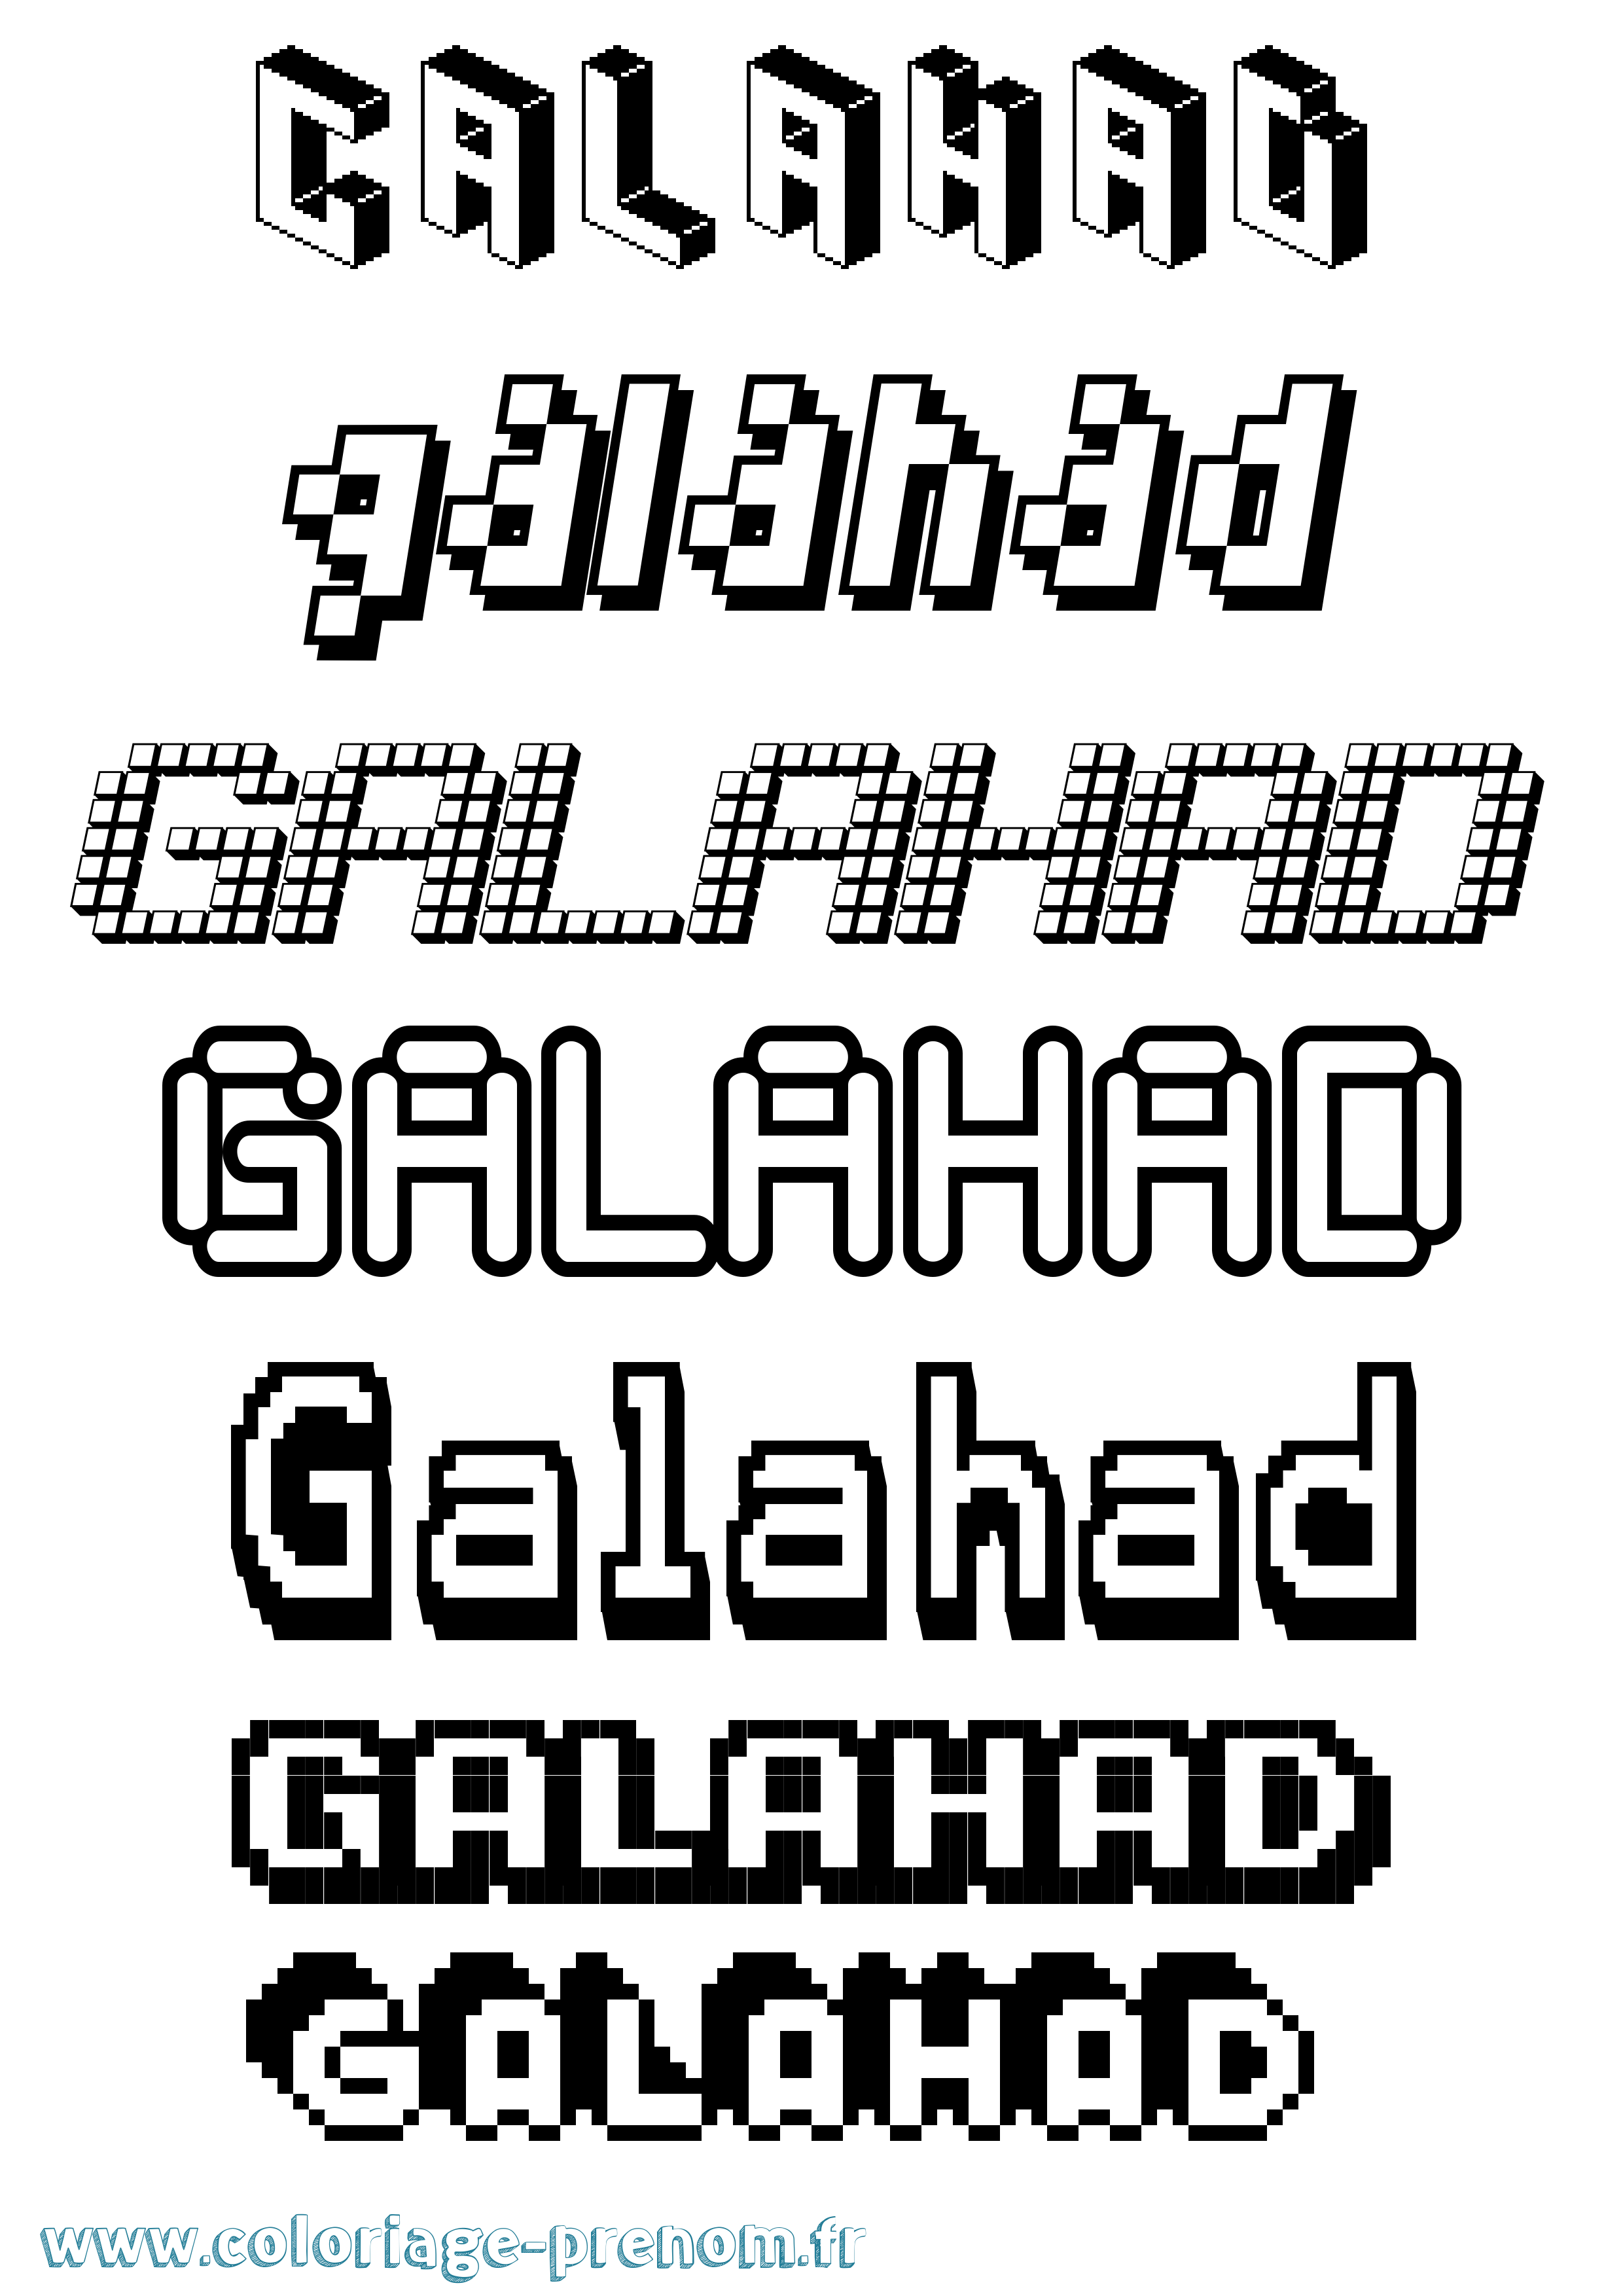 Coloriage prénom Galahad Pixel